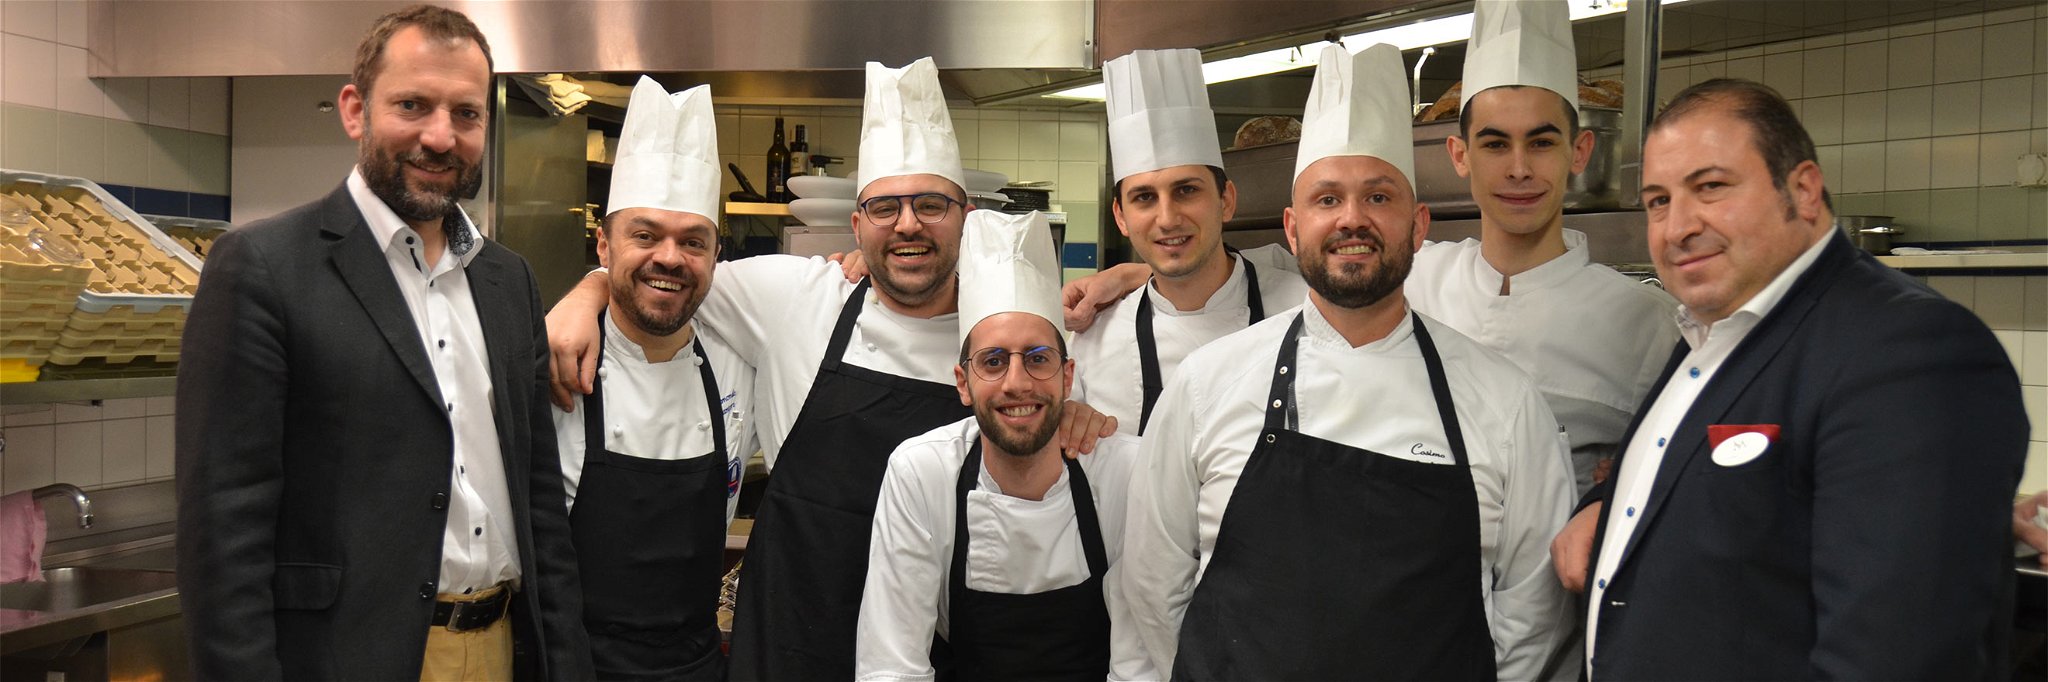 Hoteldirektor Dominik Zurbrügg (l.) mit F&amp;B Manager und Maître Francesco Stillitano (r.) und den Küchen-Teammitgliedern, die ab sofort gemeinsam die Chef-Funktion übernehmen.